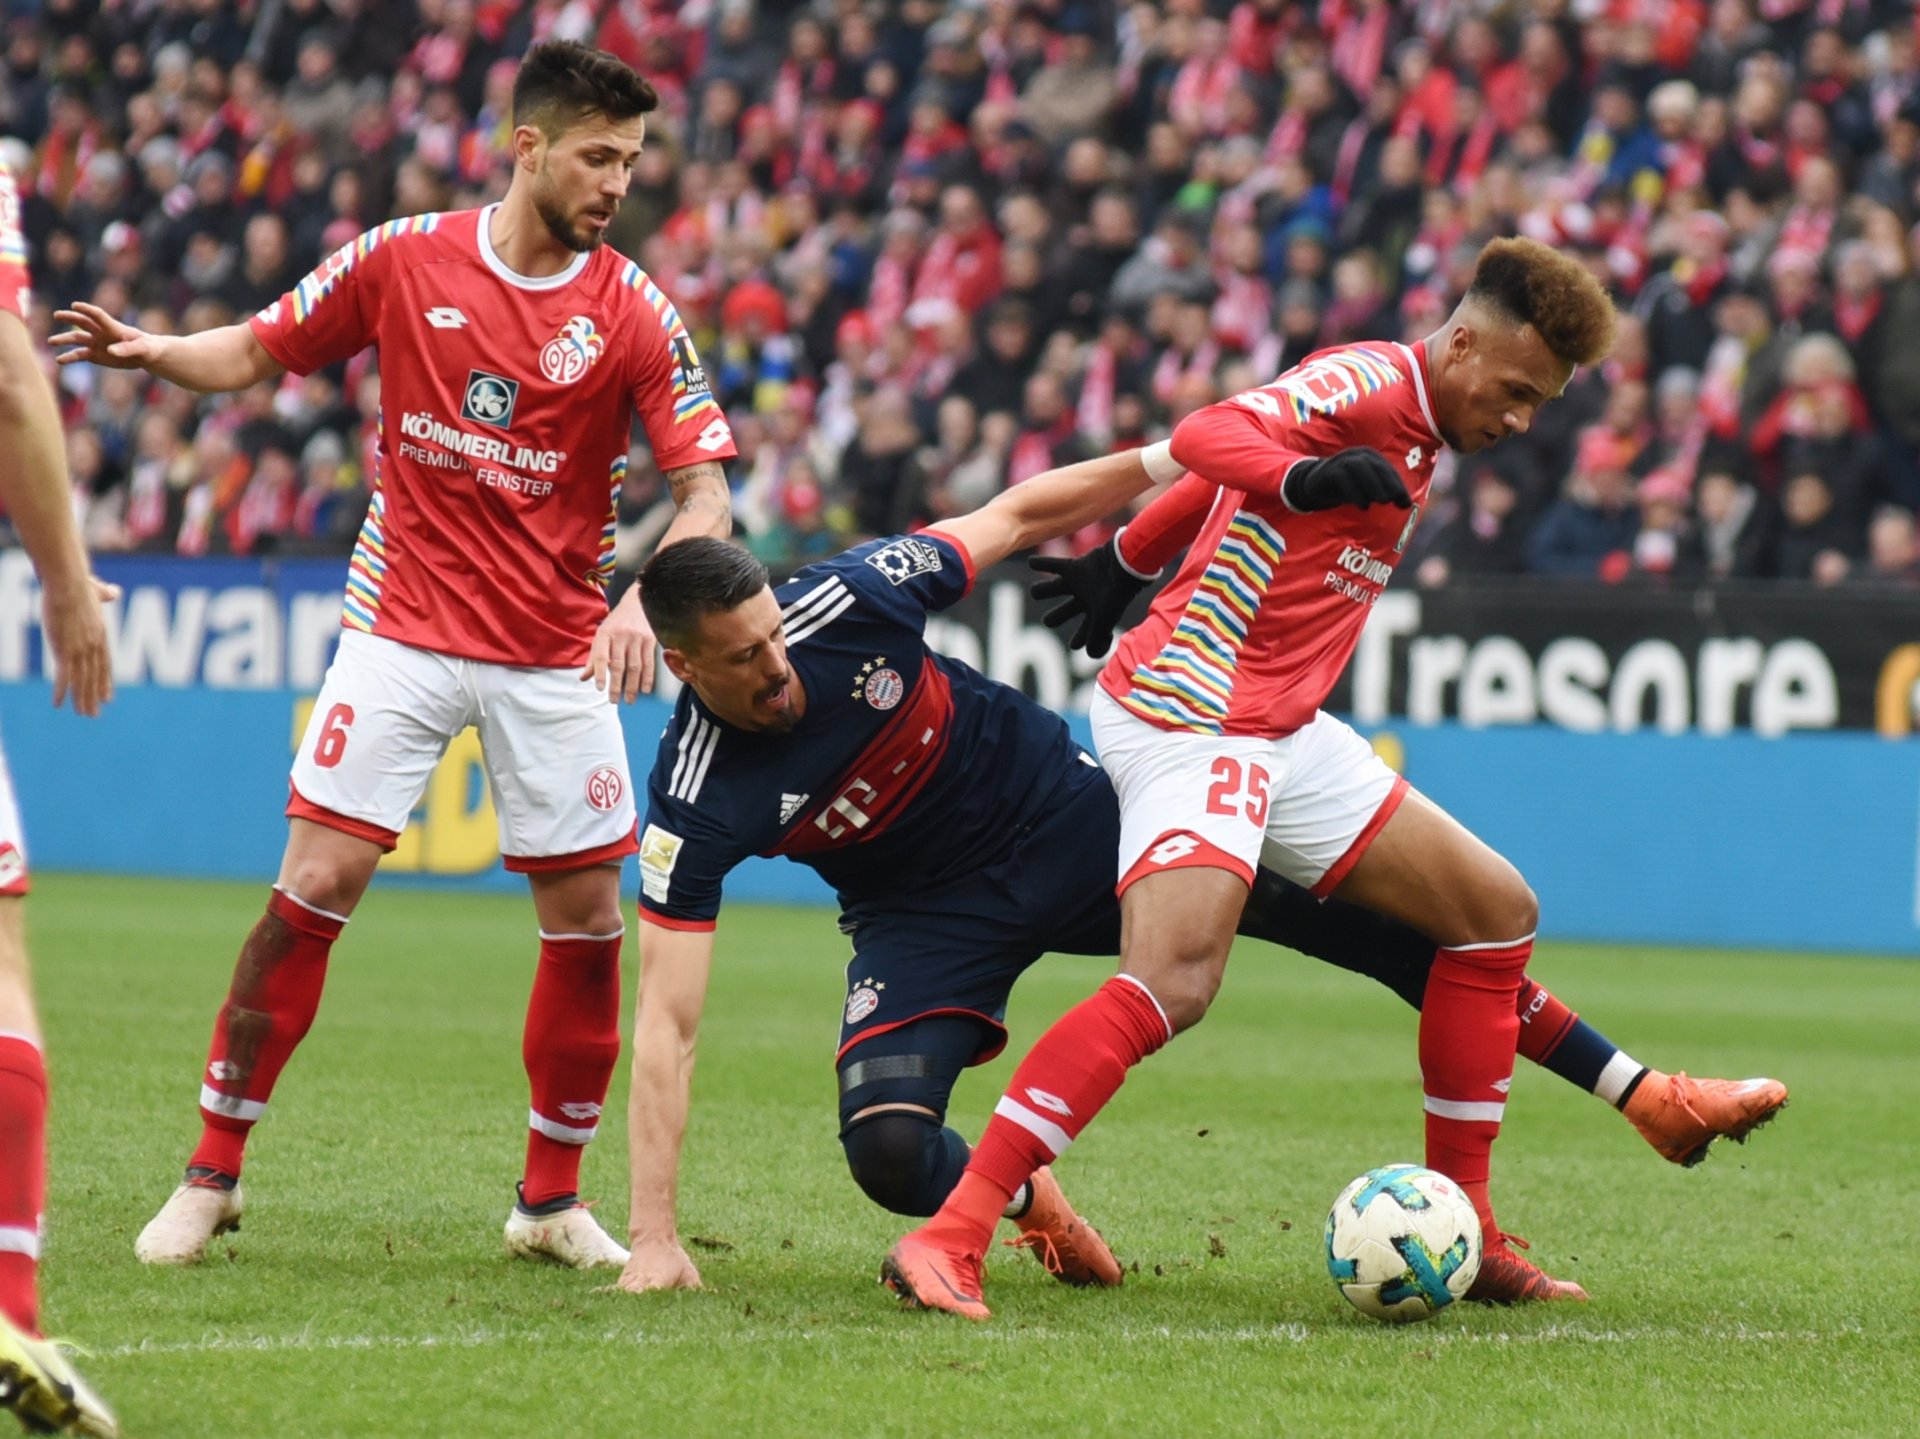 Abgesehen von den Gegentreffern waren die Mainzer ein mindestens gleichwertiger Gegner, auch in den Zweikämpfen, wie hier Bayern-Stürmer Sandro Wagner gegen Danny Latza (l.) und Jean-Philippe Gbamin erfährt.